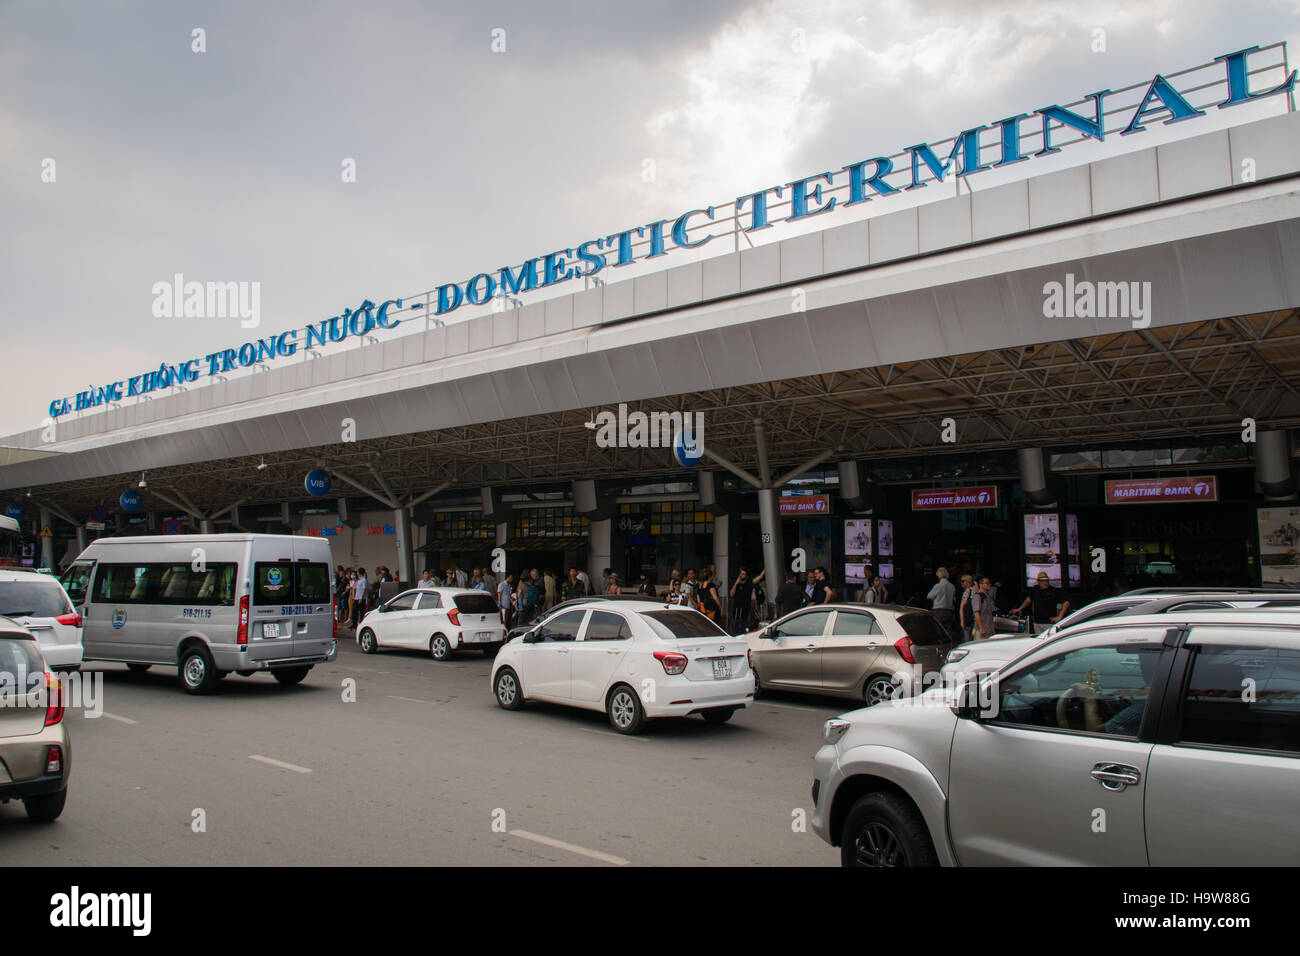 Aeropuerto ho chi minh fotografías e imágenes de alta resolución - Alamy